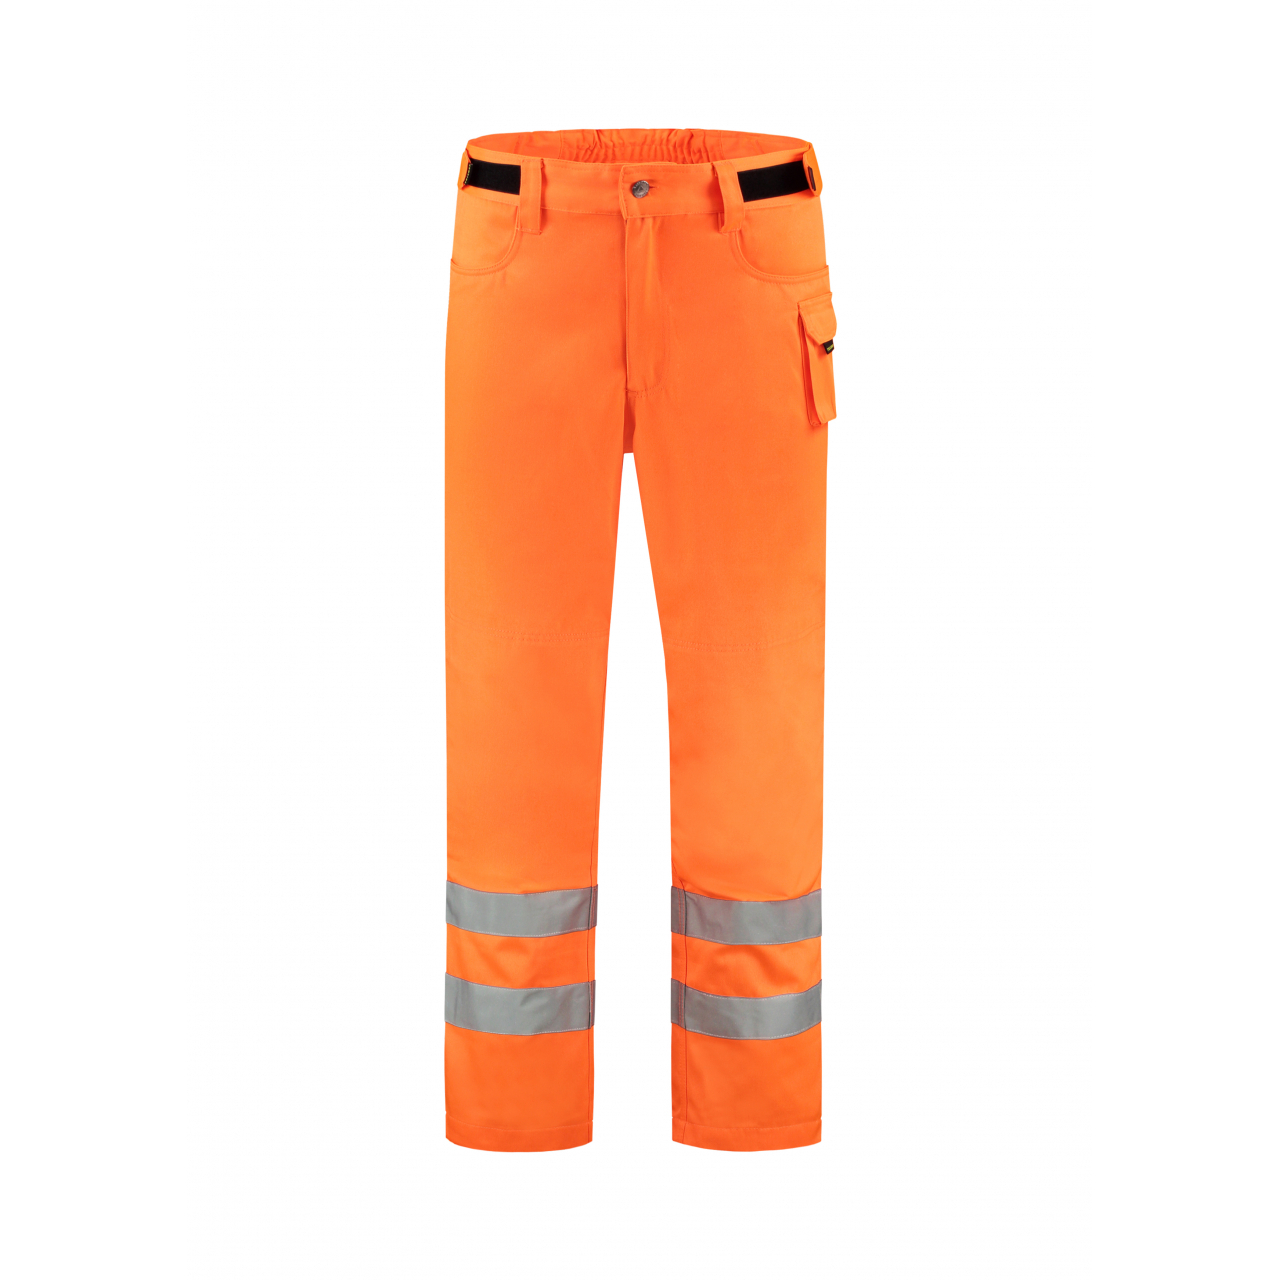 Pracovní kalhoty unisex Tricorp RWS Work Pants - oranžové svítící, 44